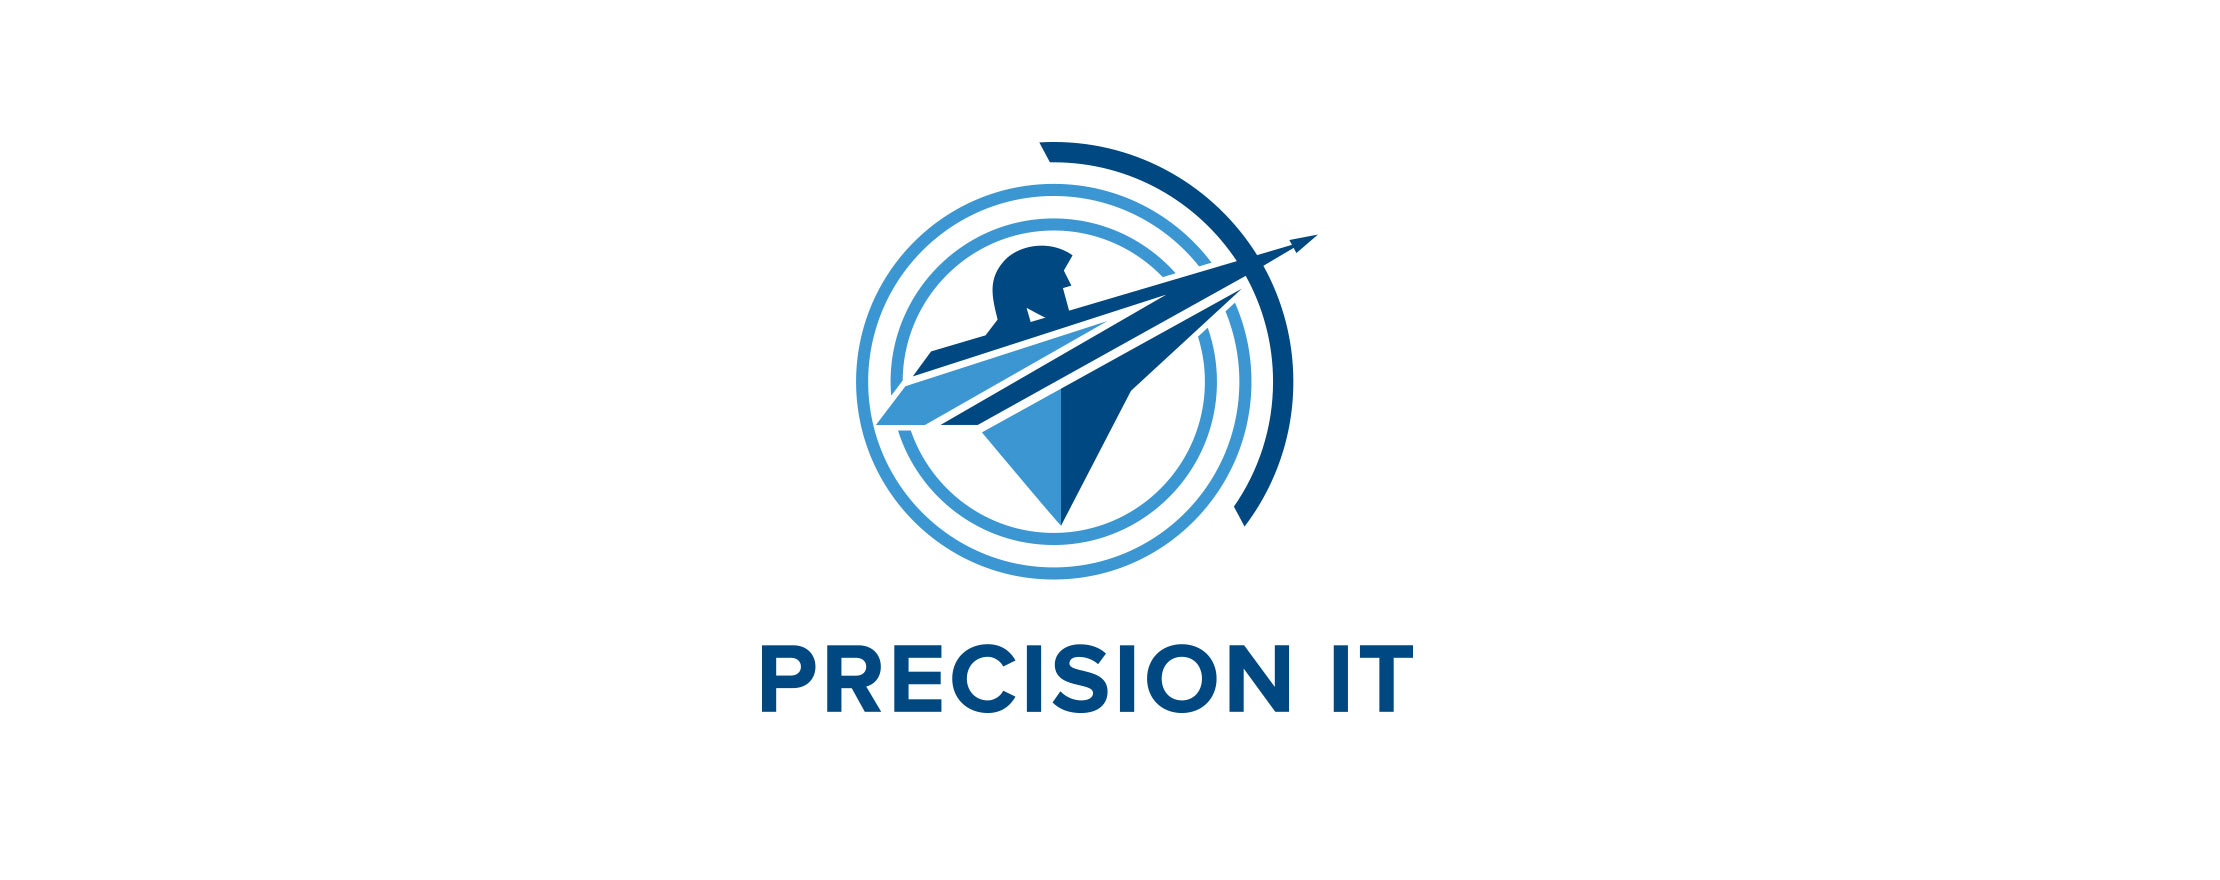 Precision-1